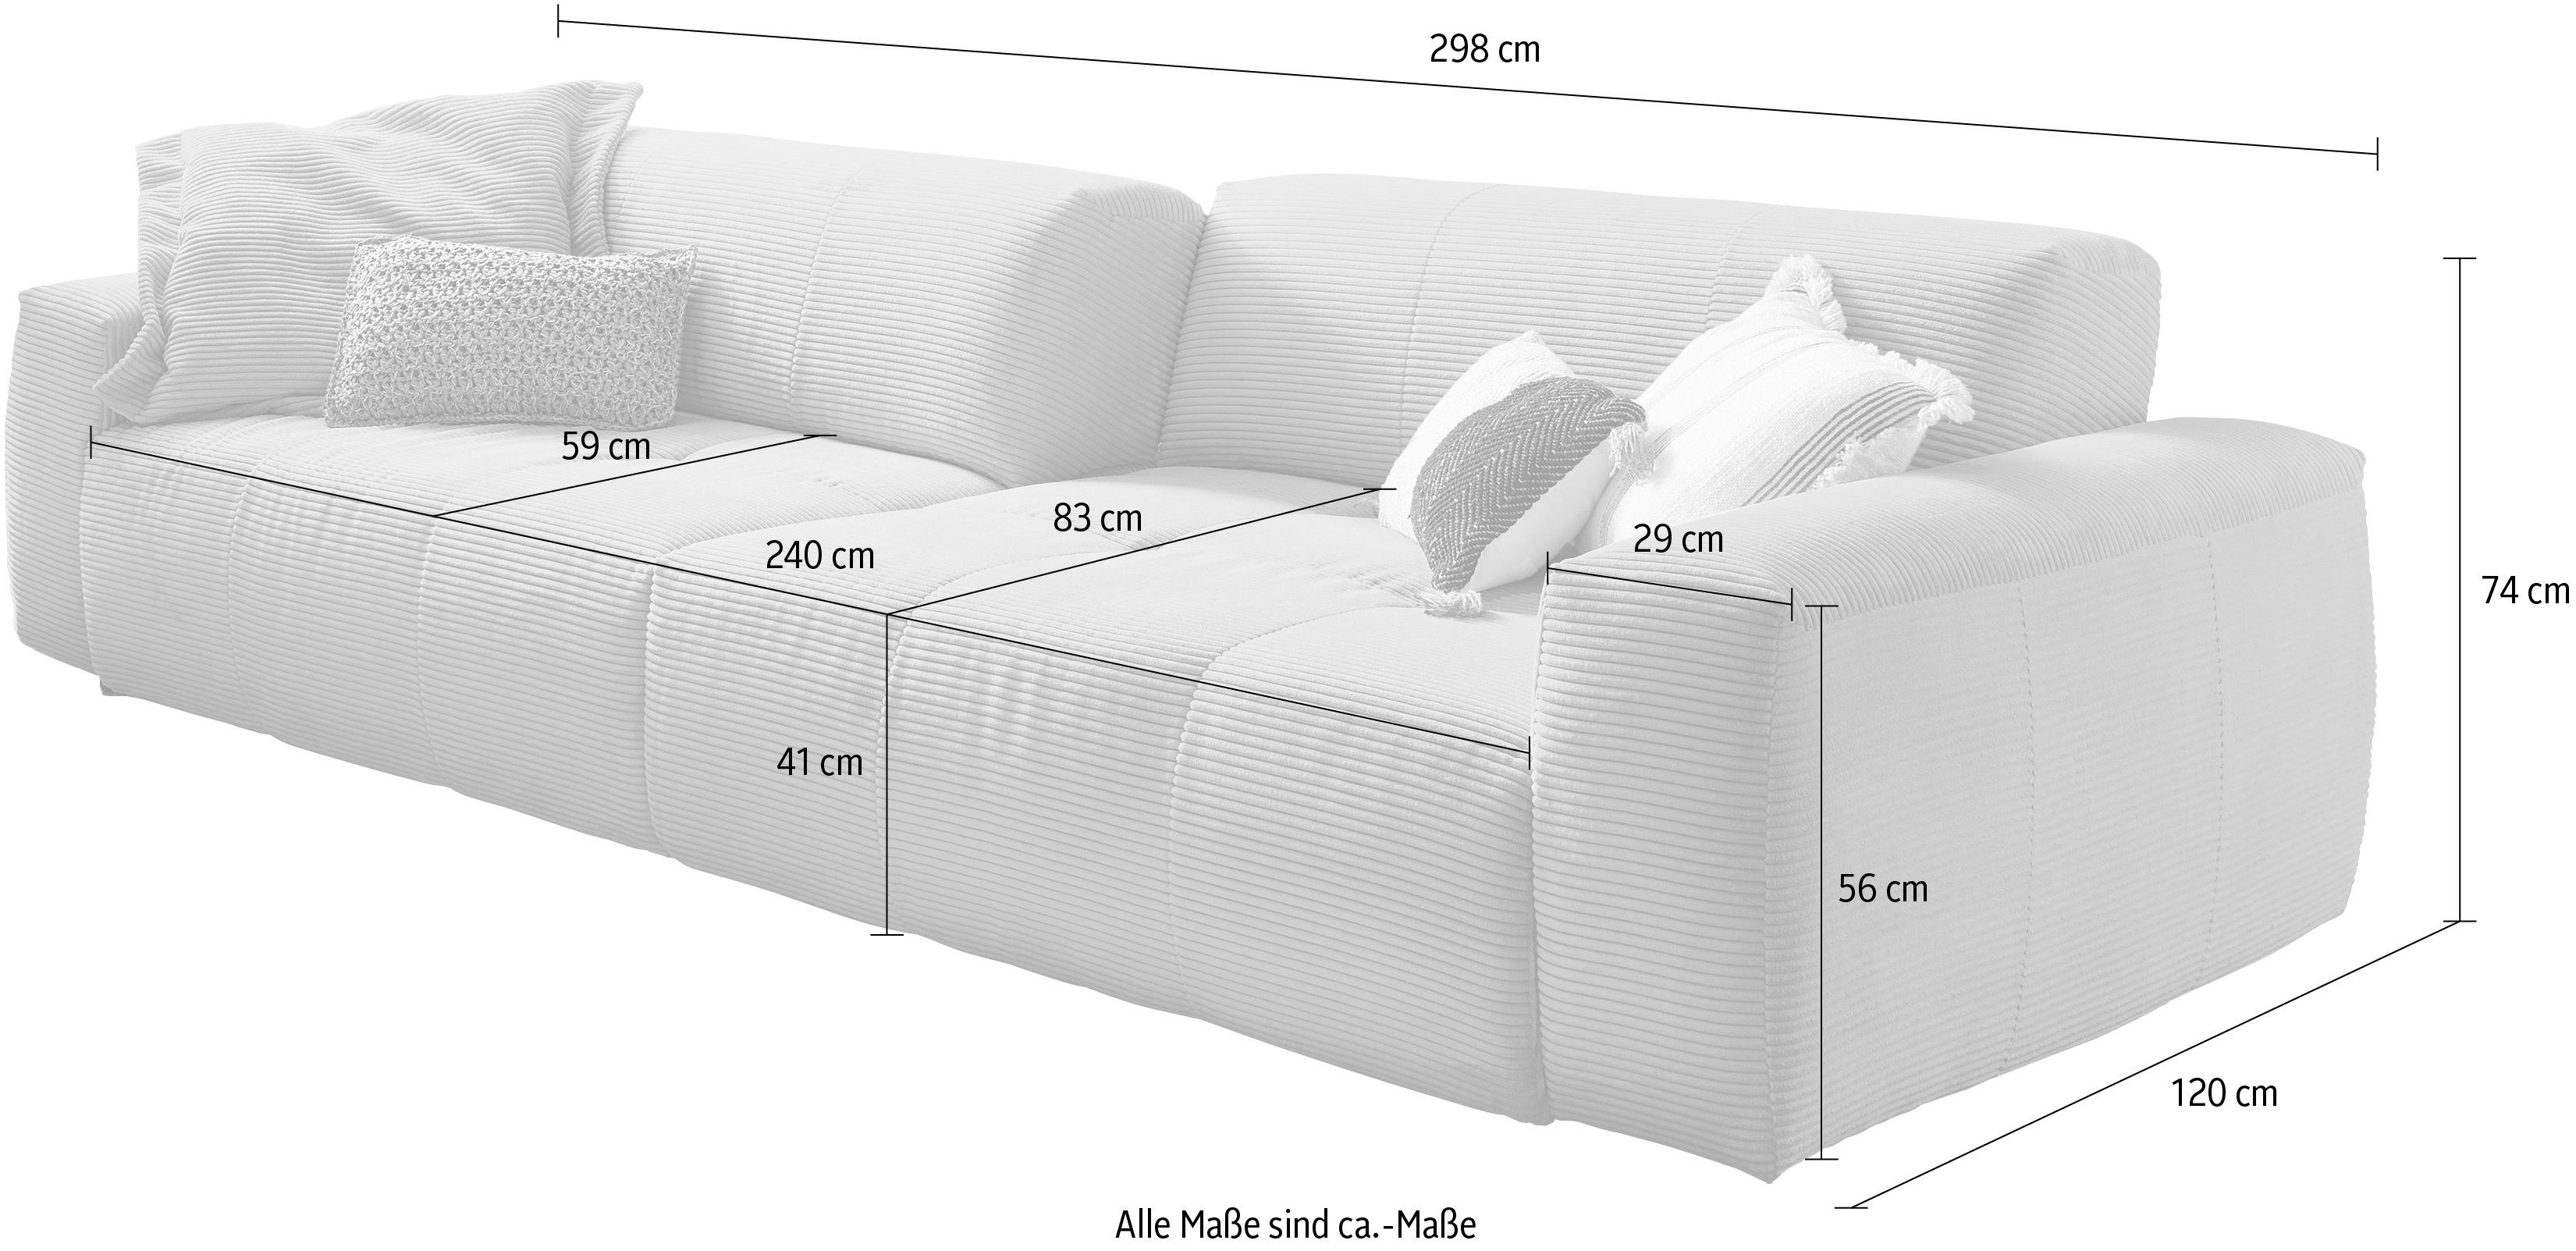 Rückenlehne, in Yoshy, durch verstellbare Big-Sofa taupe Cord Sitztiefen Zwei 3C Candy Bezug